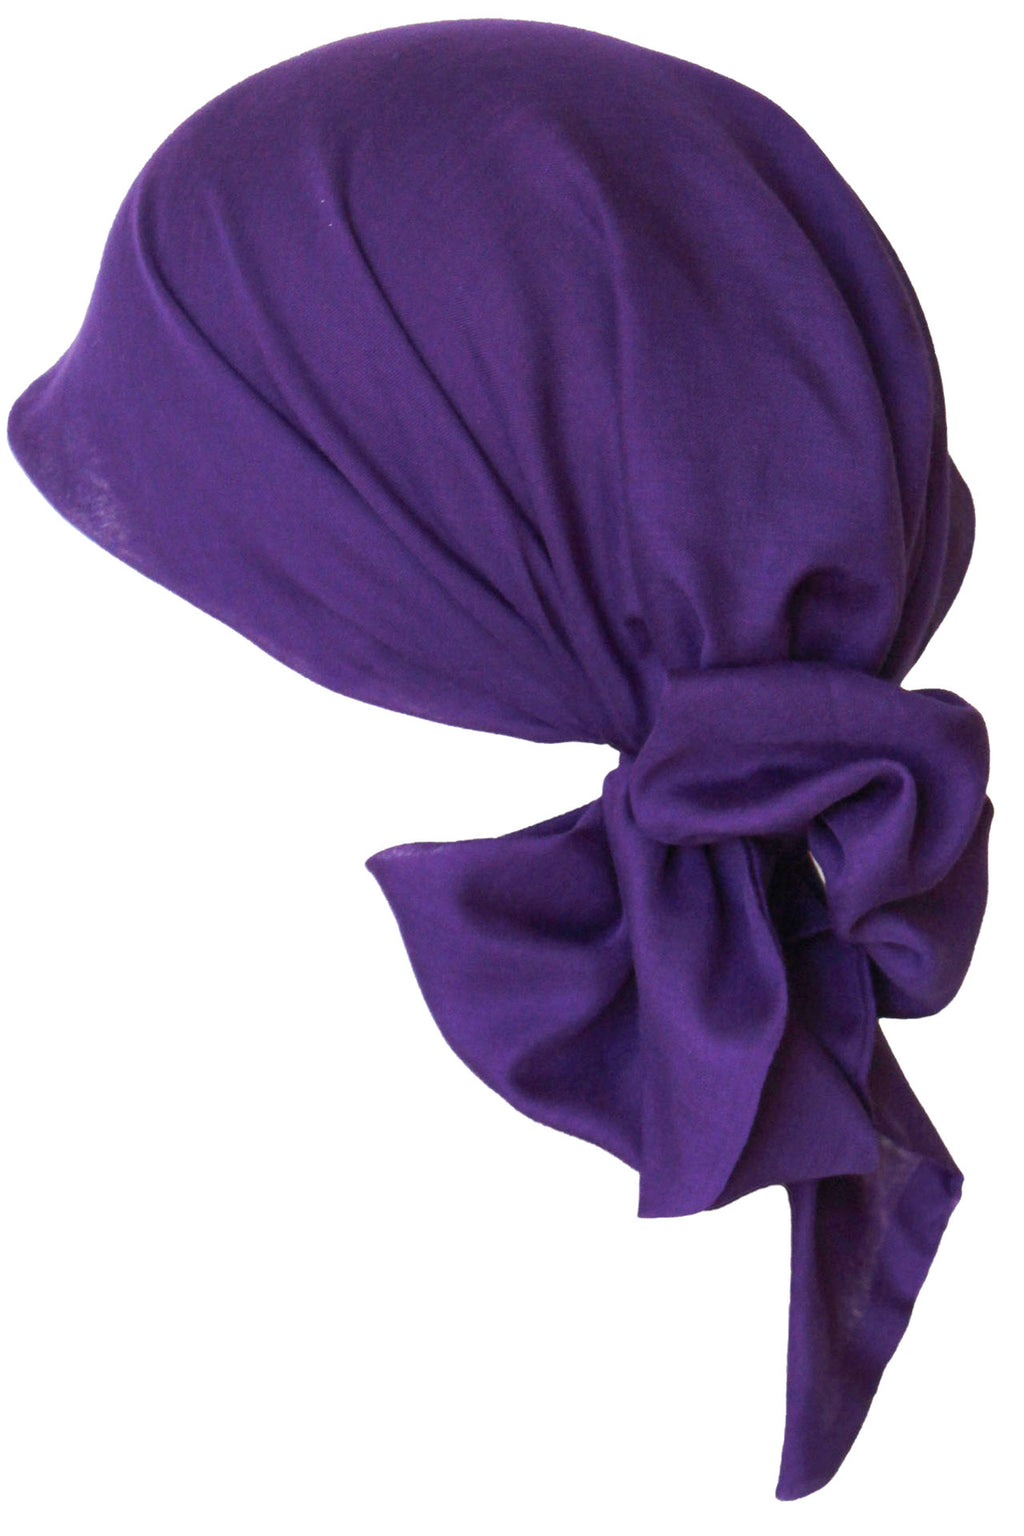 Einfach zu bindendes Kopftuch (Lila)